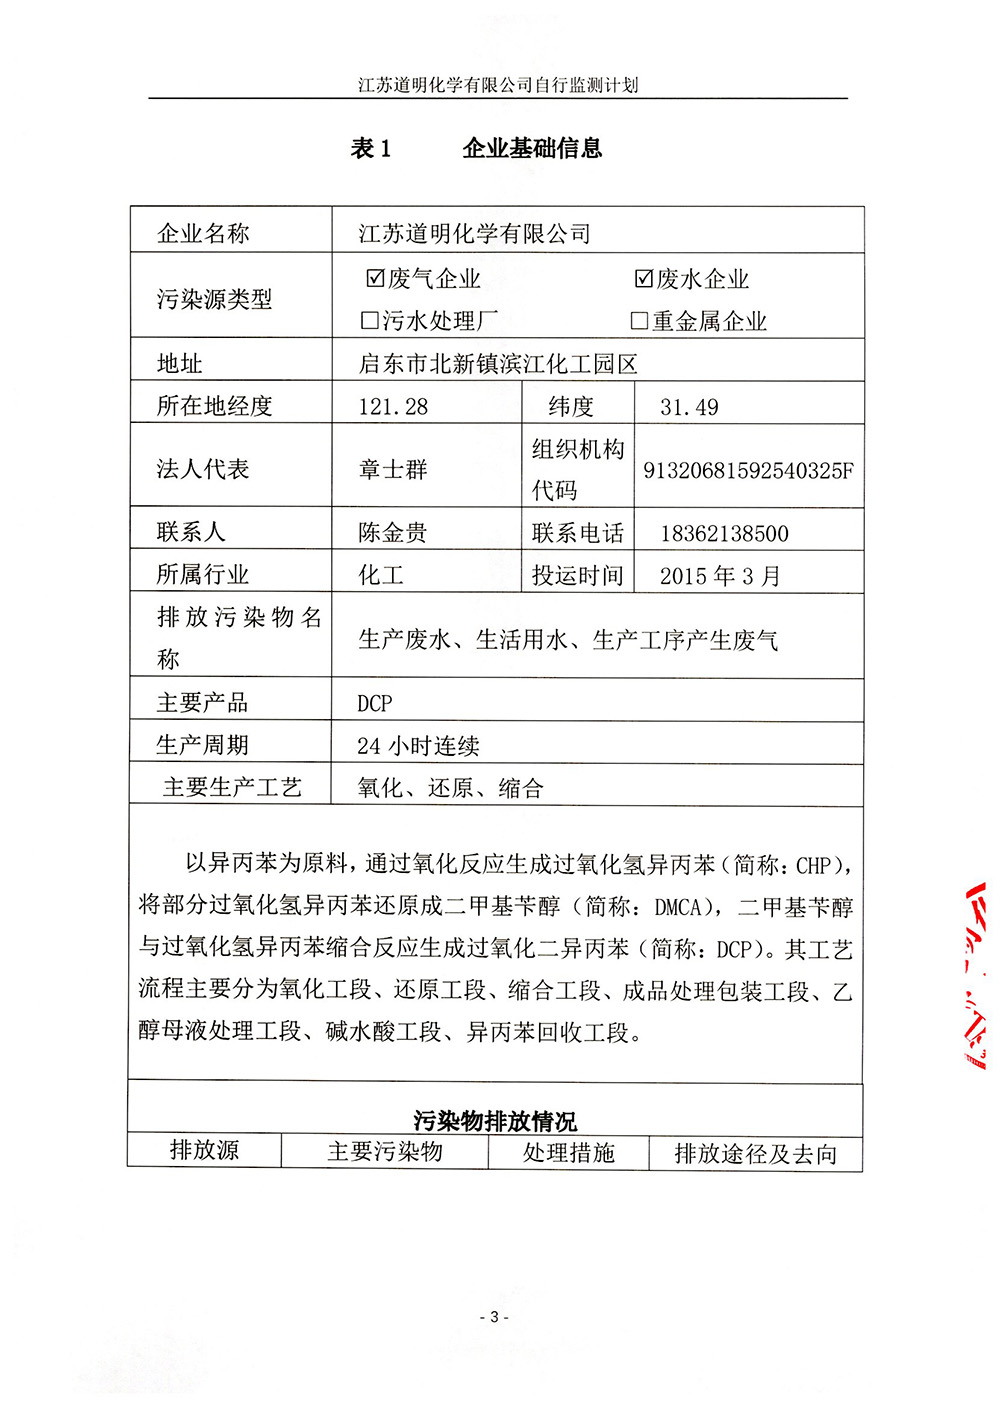 江苏道明化学有限公司自行监测计划修订版